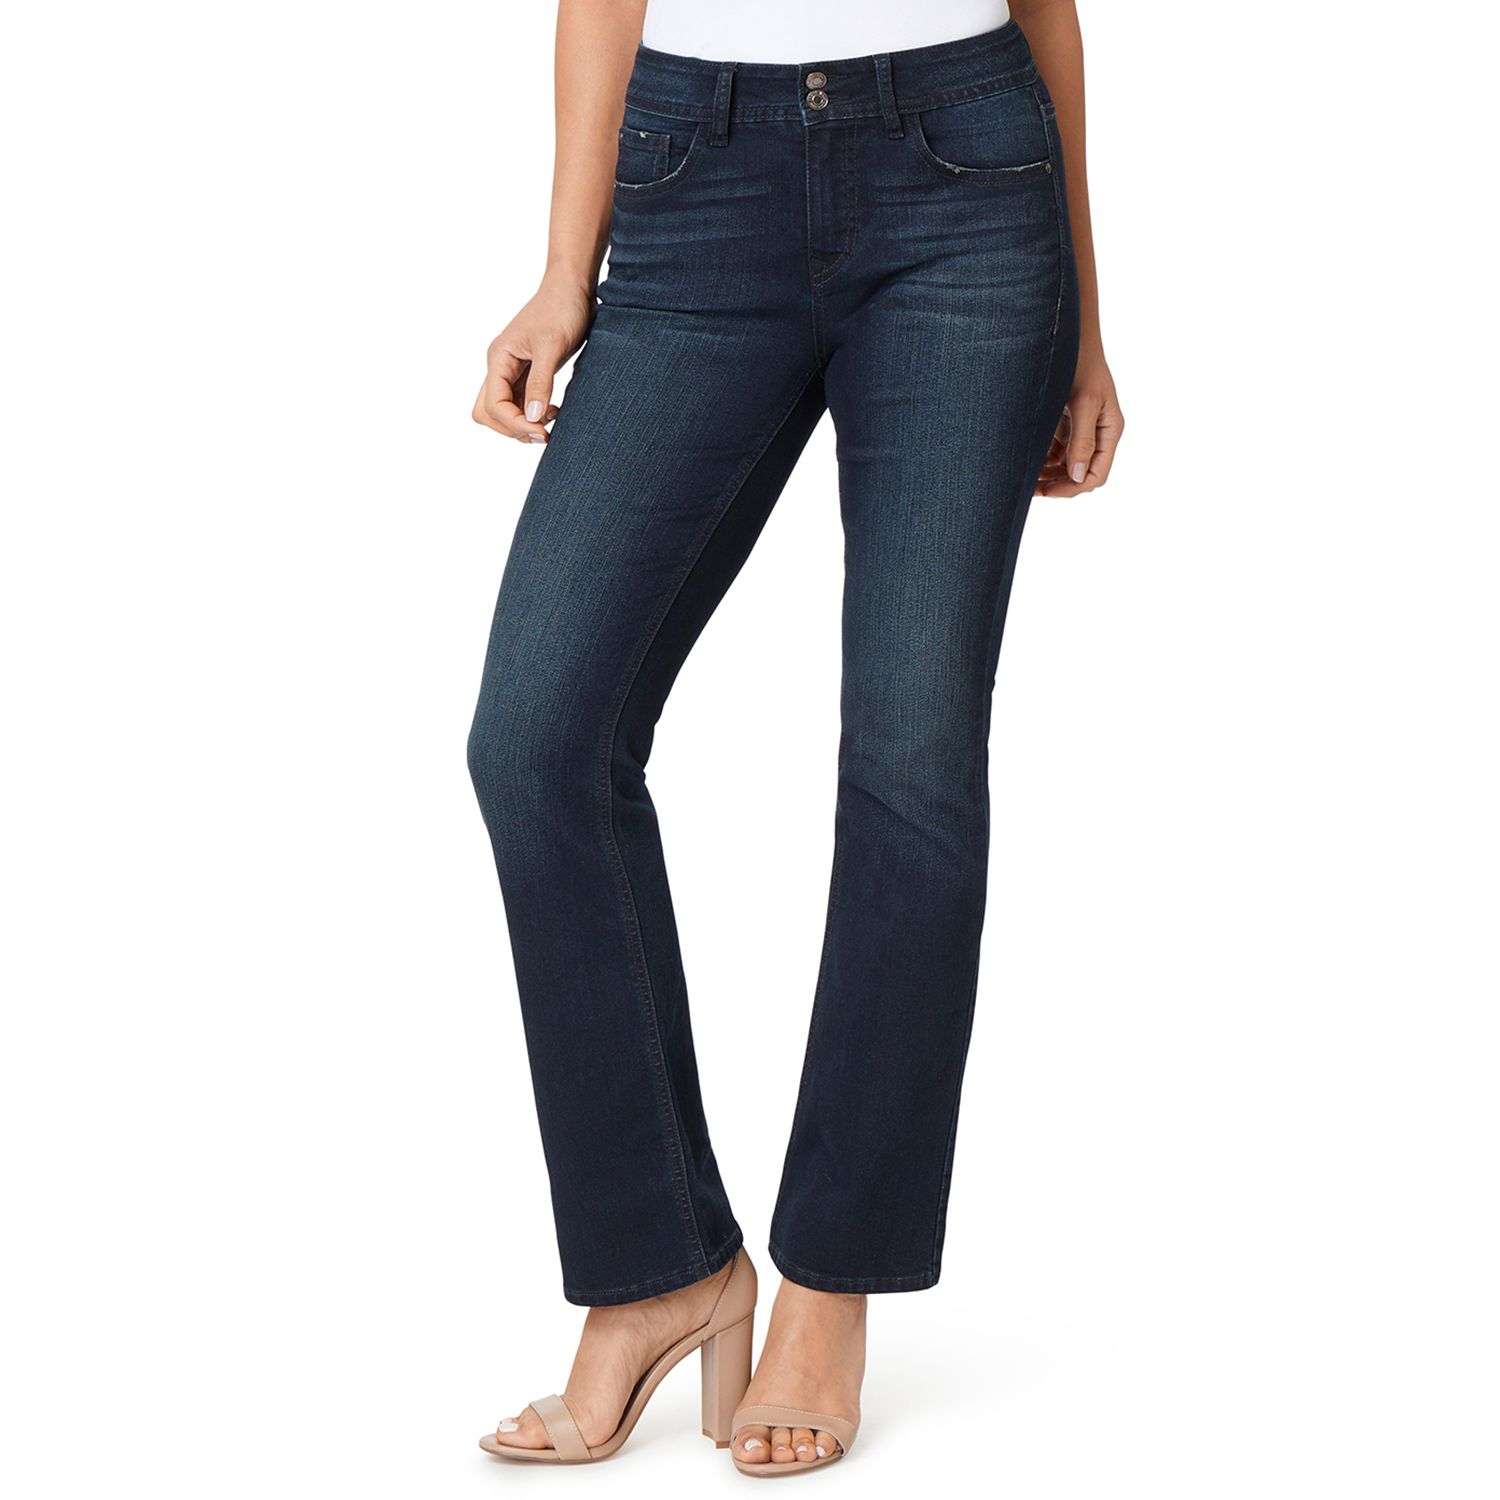 women's curvy jeans size 16